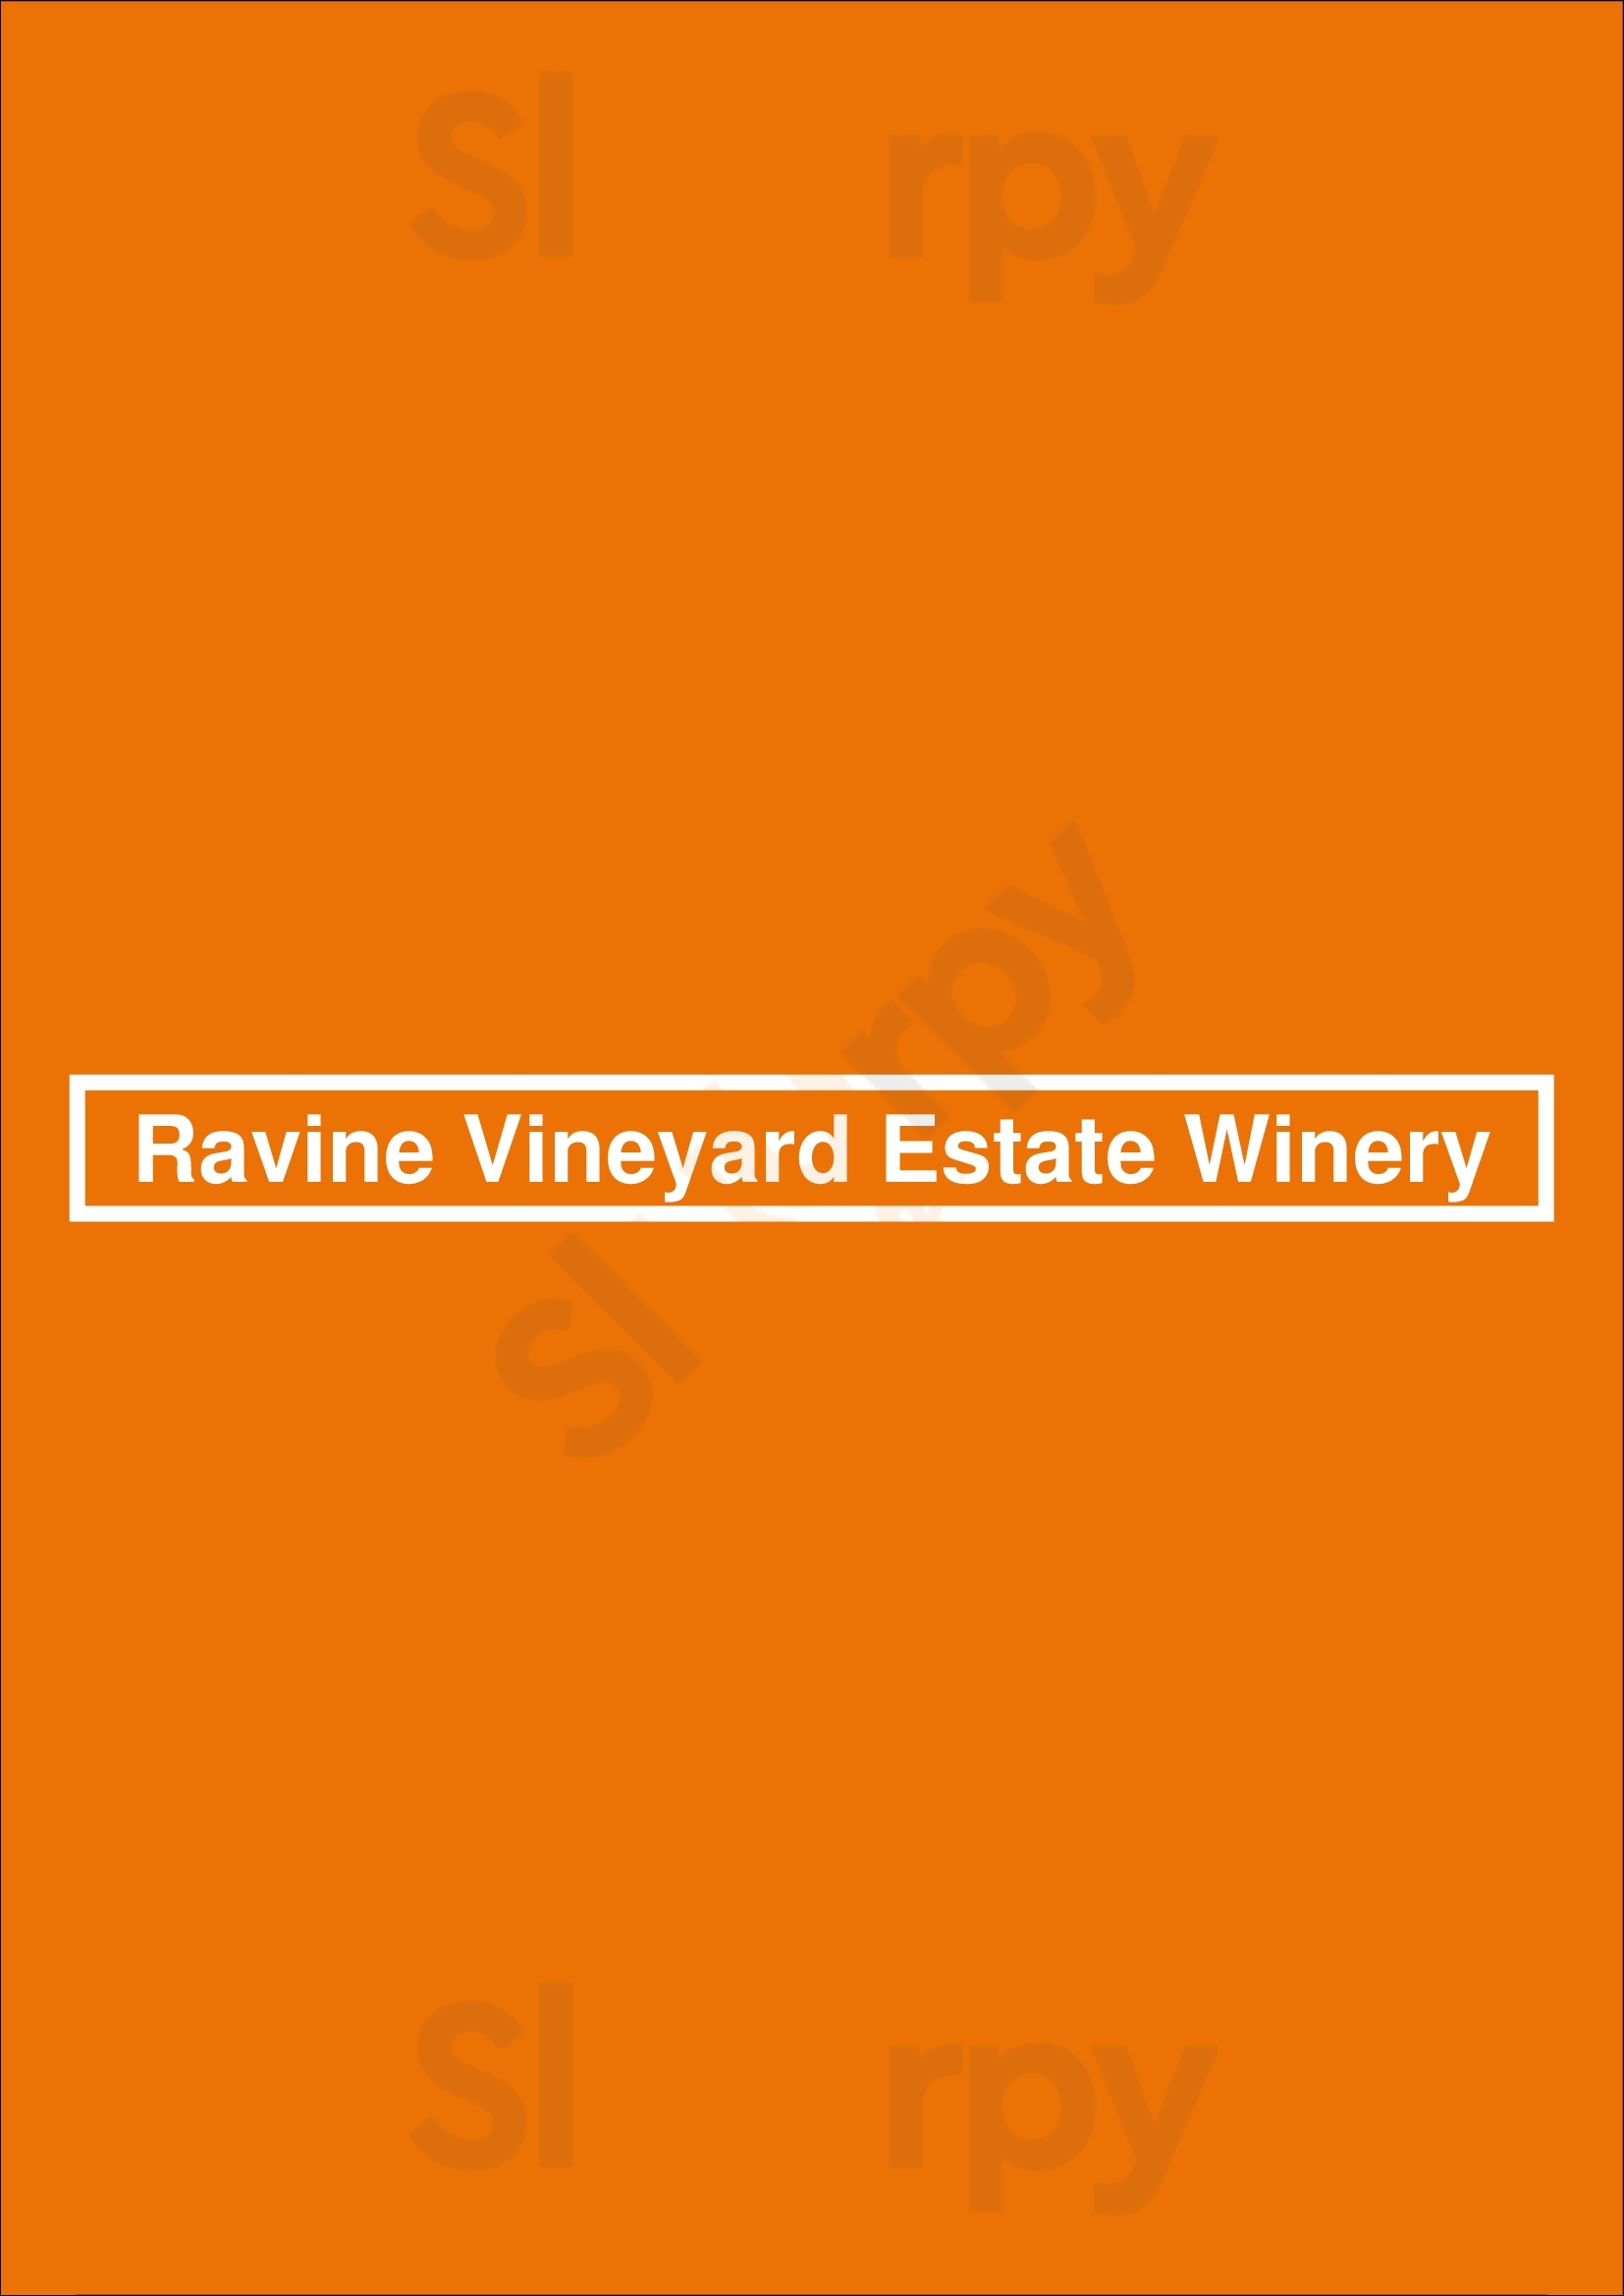 Ravine Vineyard Estate Winery Niagara-on-the-Lake Menu - 1